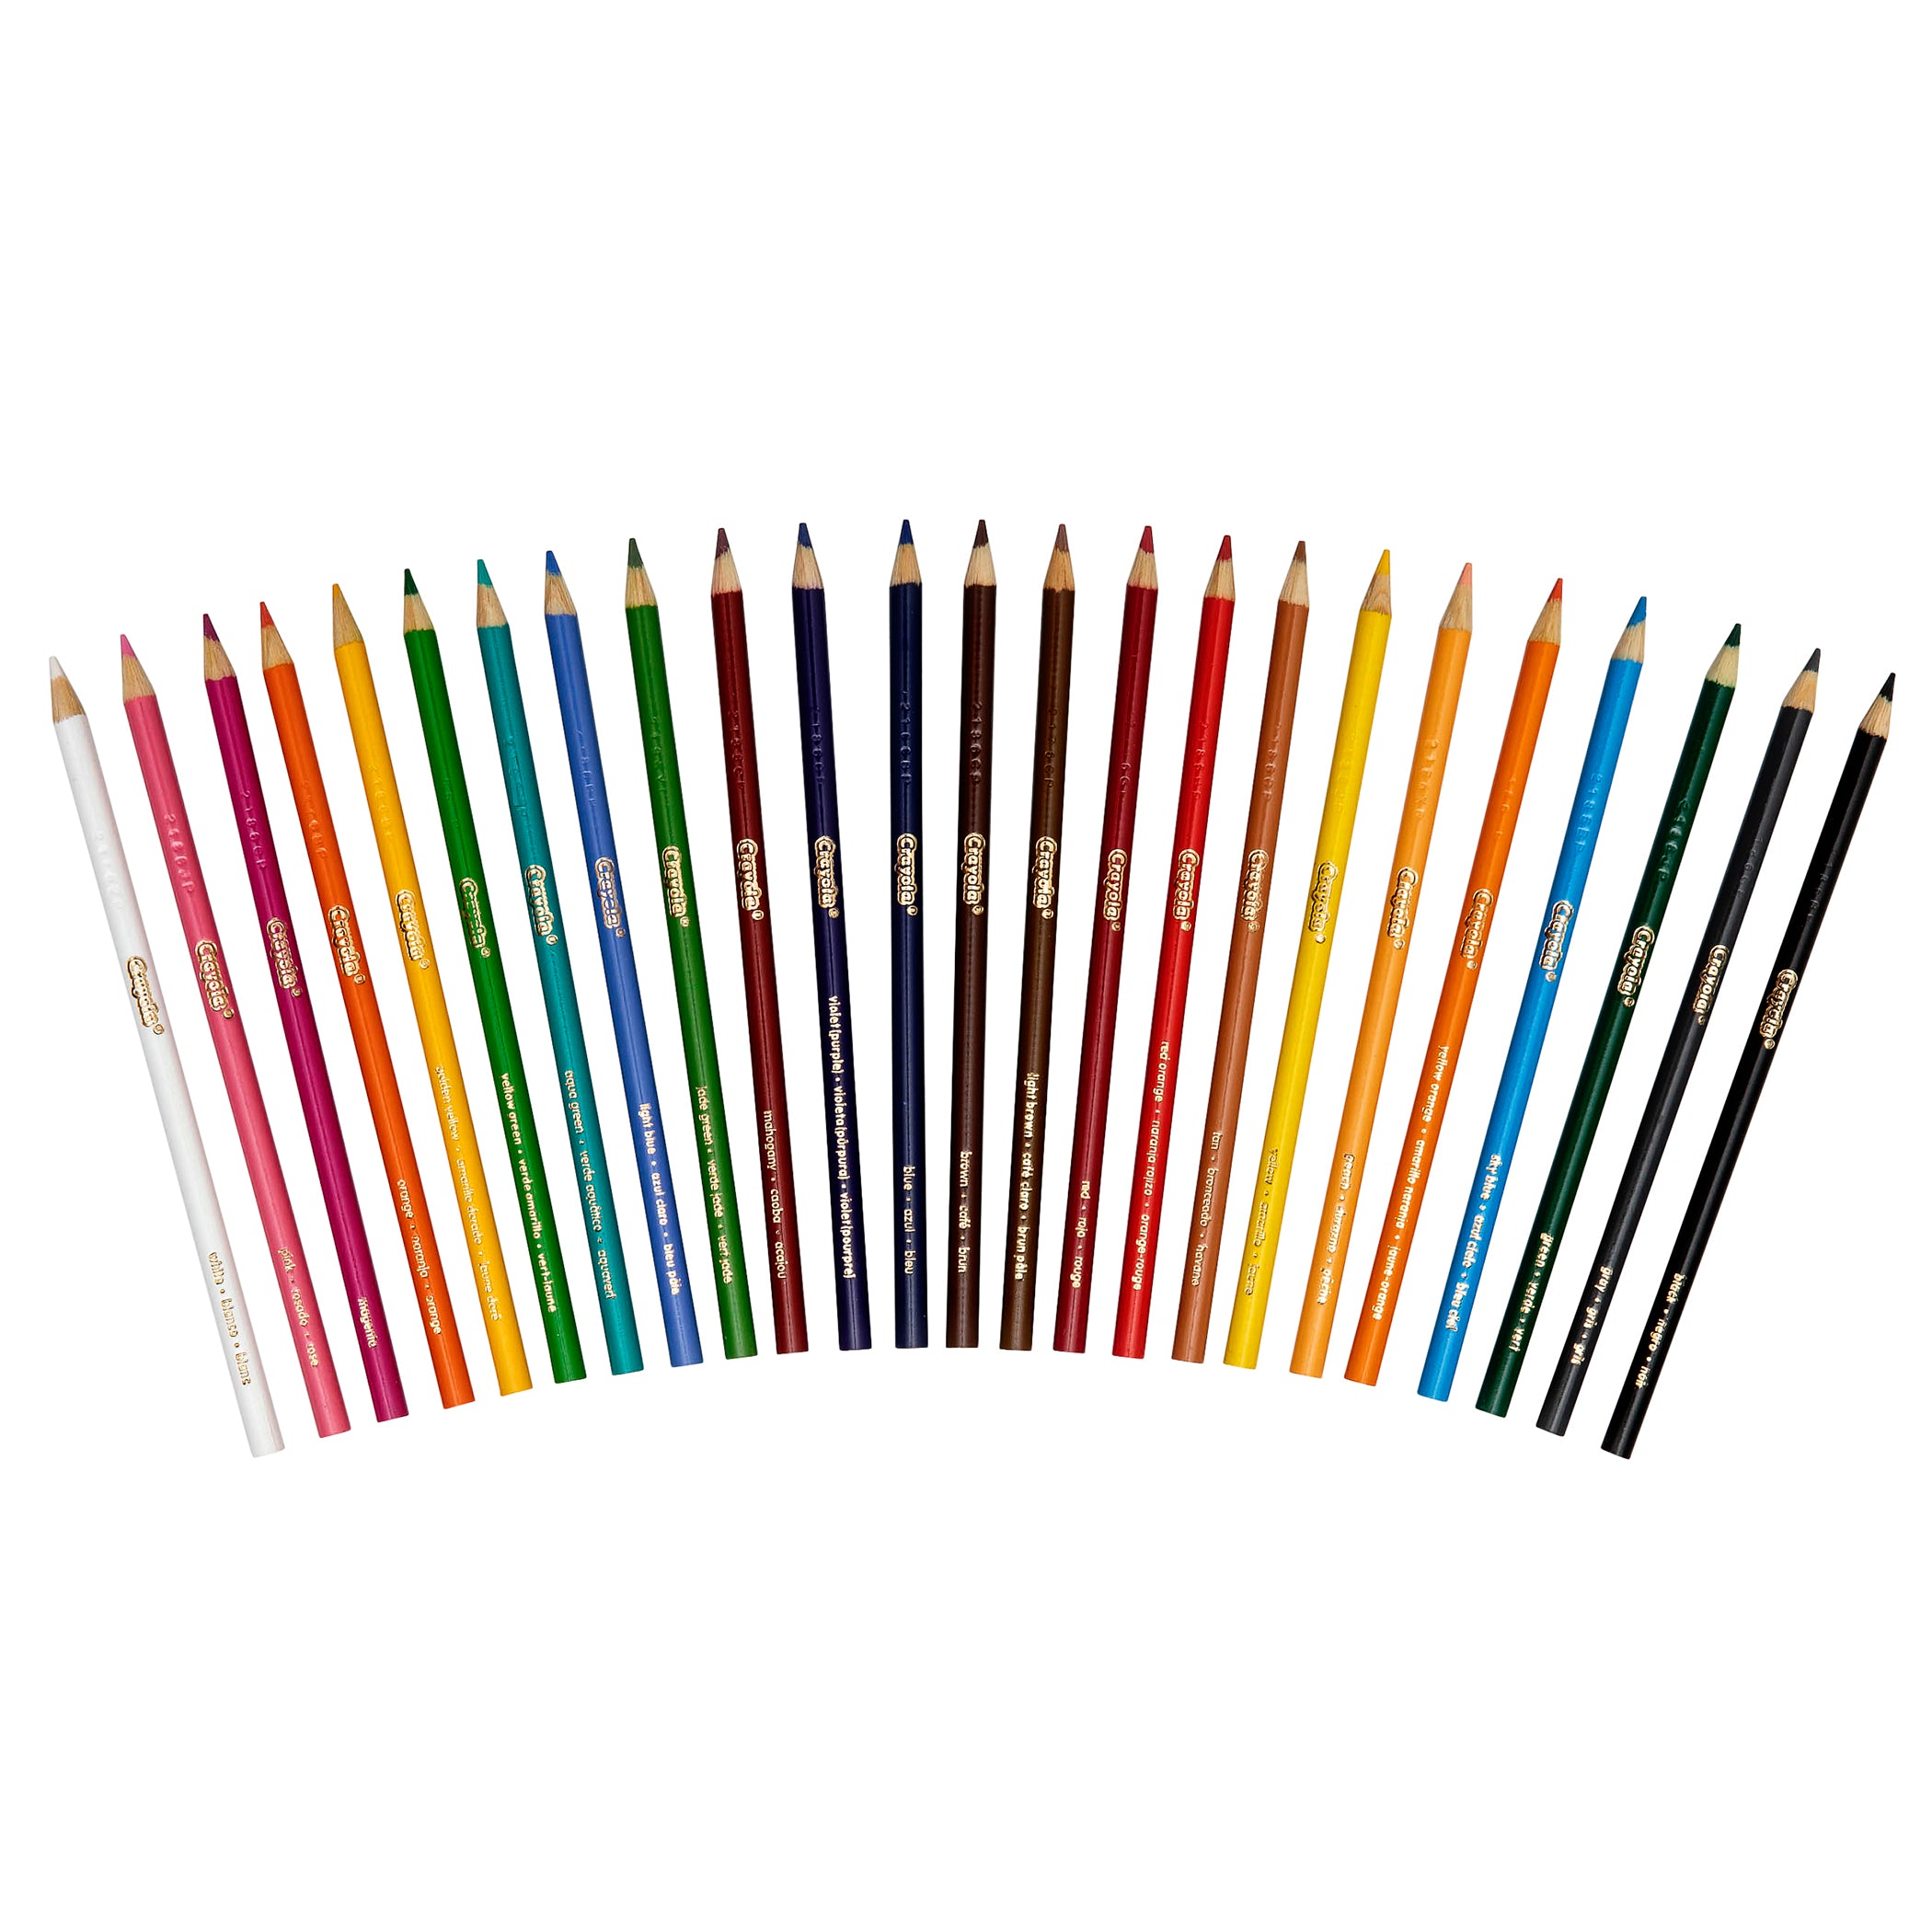 Colored Pencils, 24 Per Box, 3 Boxes